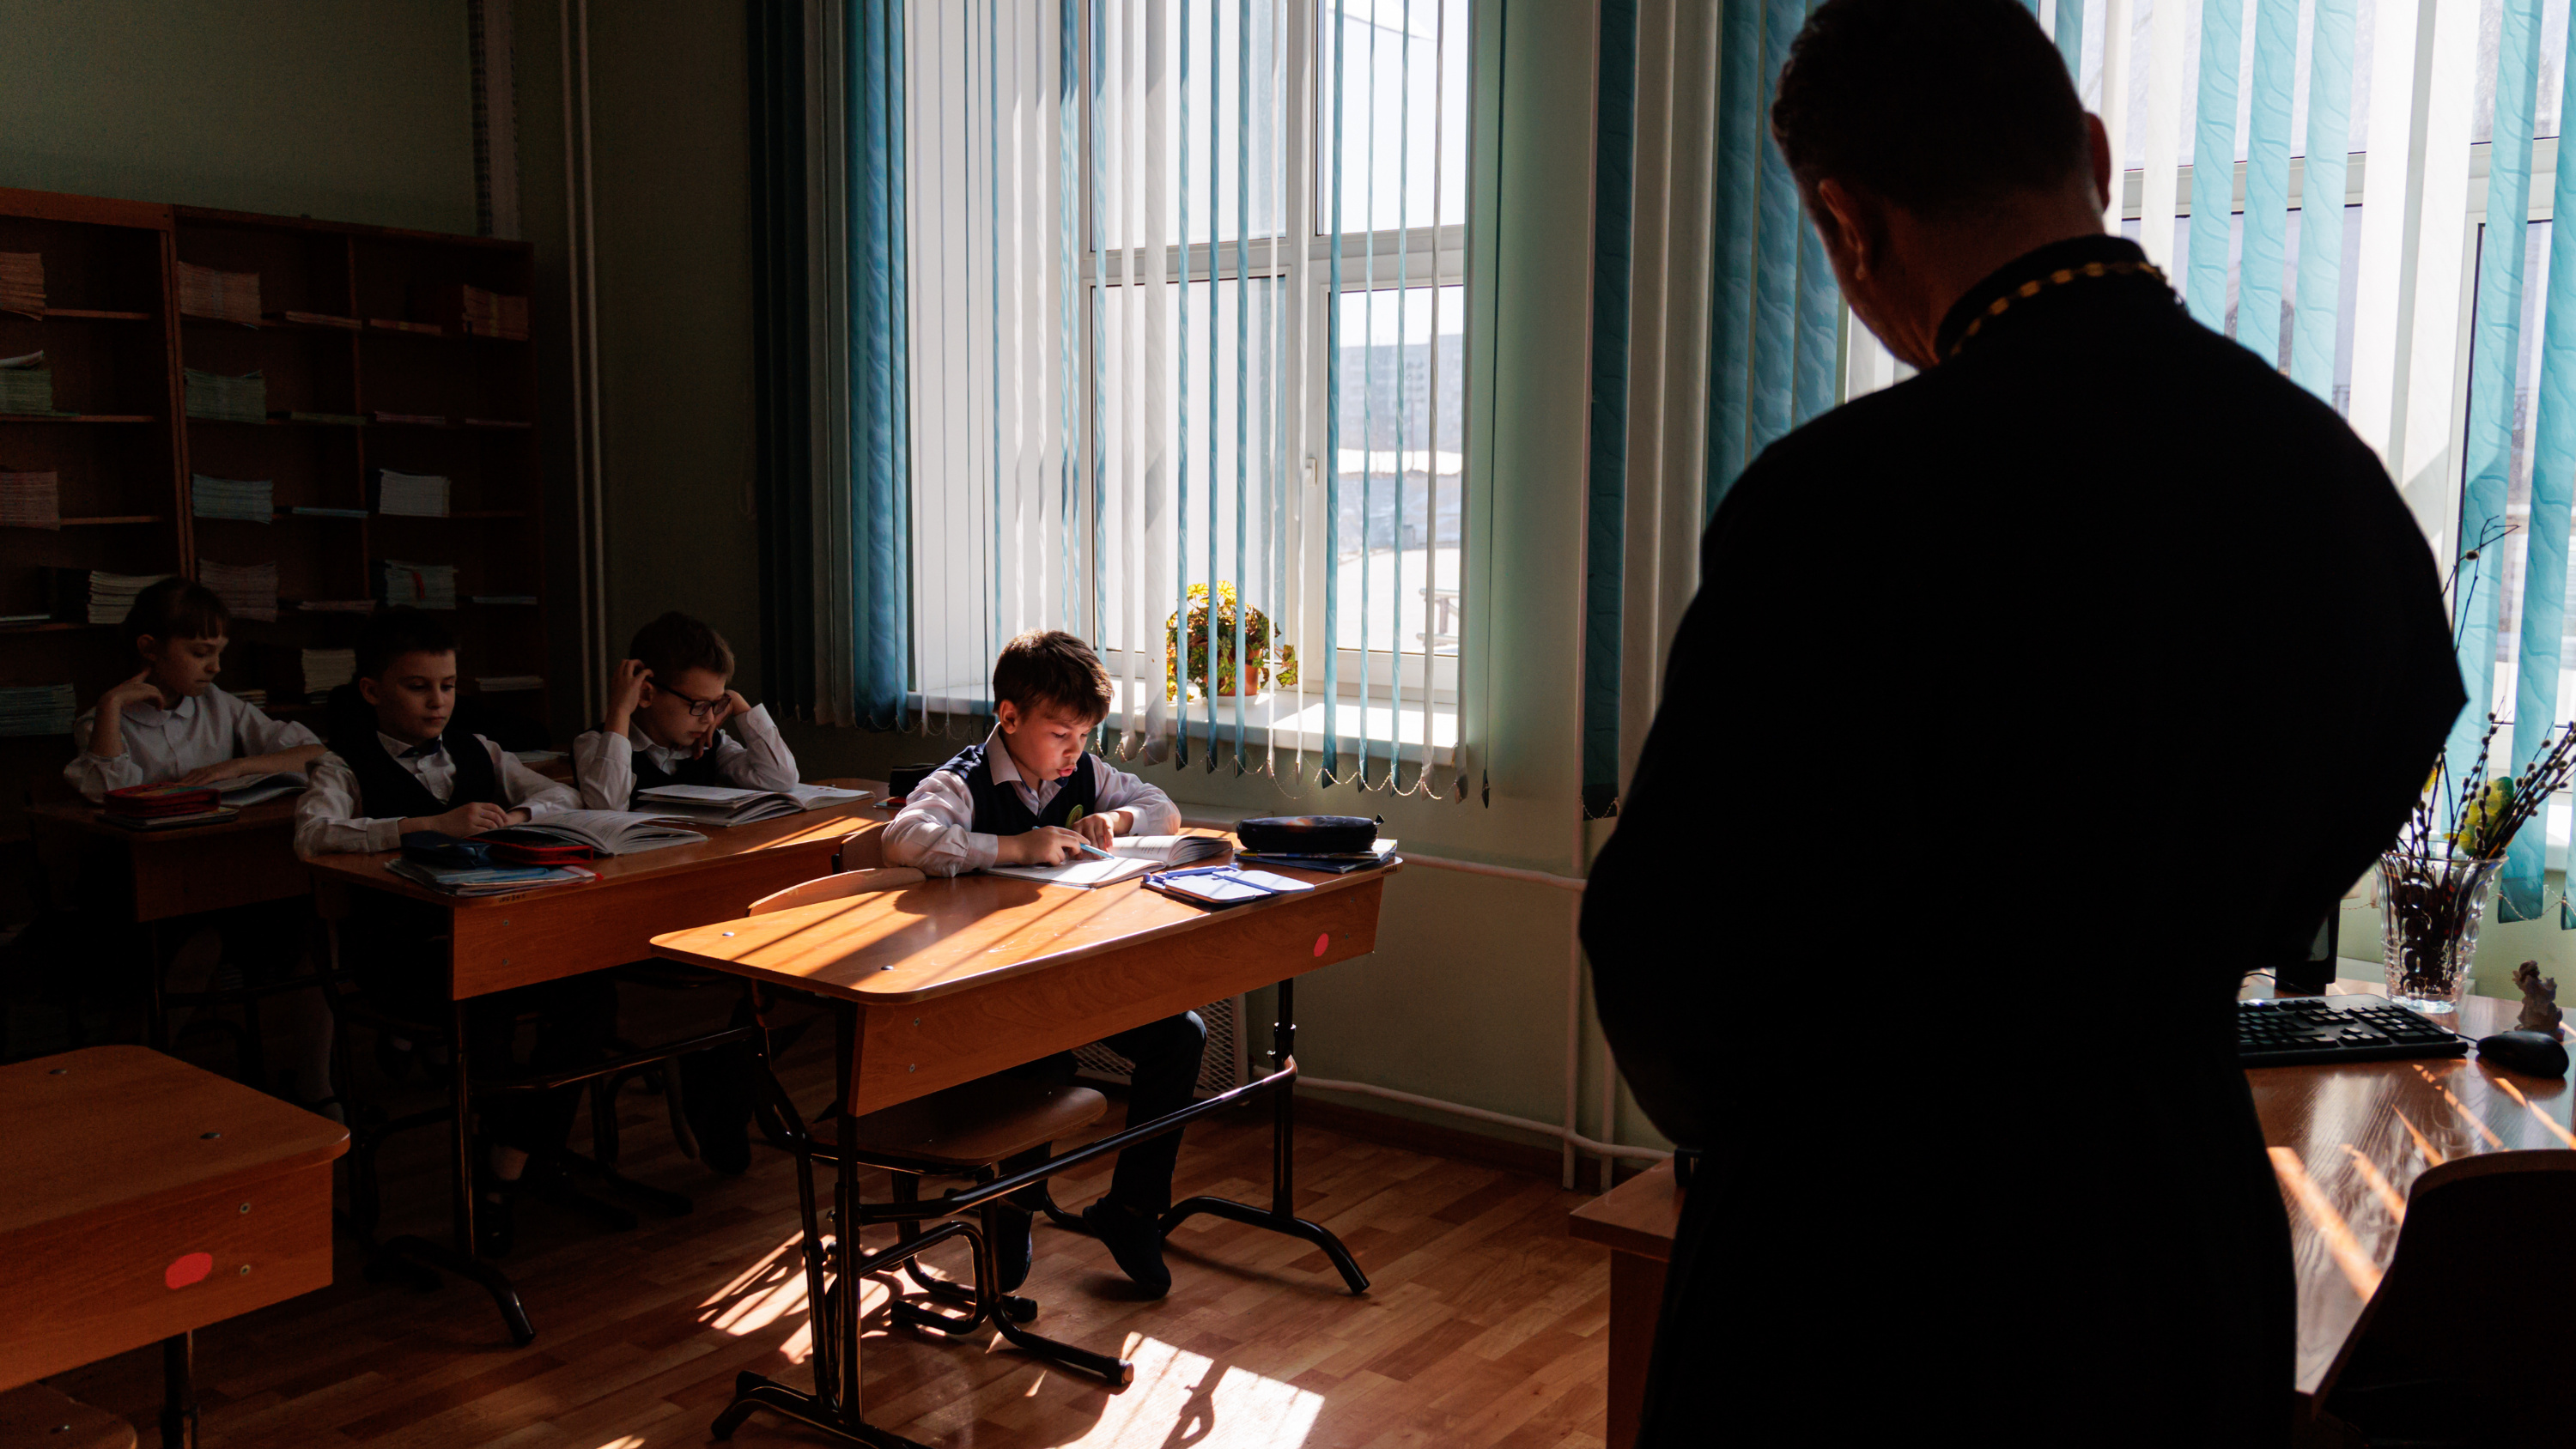 Едят в трапезной и молятся Богородице перед уроками: что происходит за стенами единственной православной гимназии Красноярска